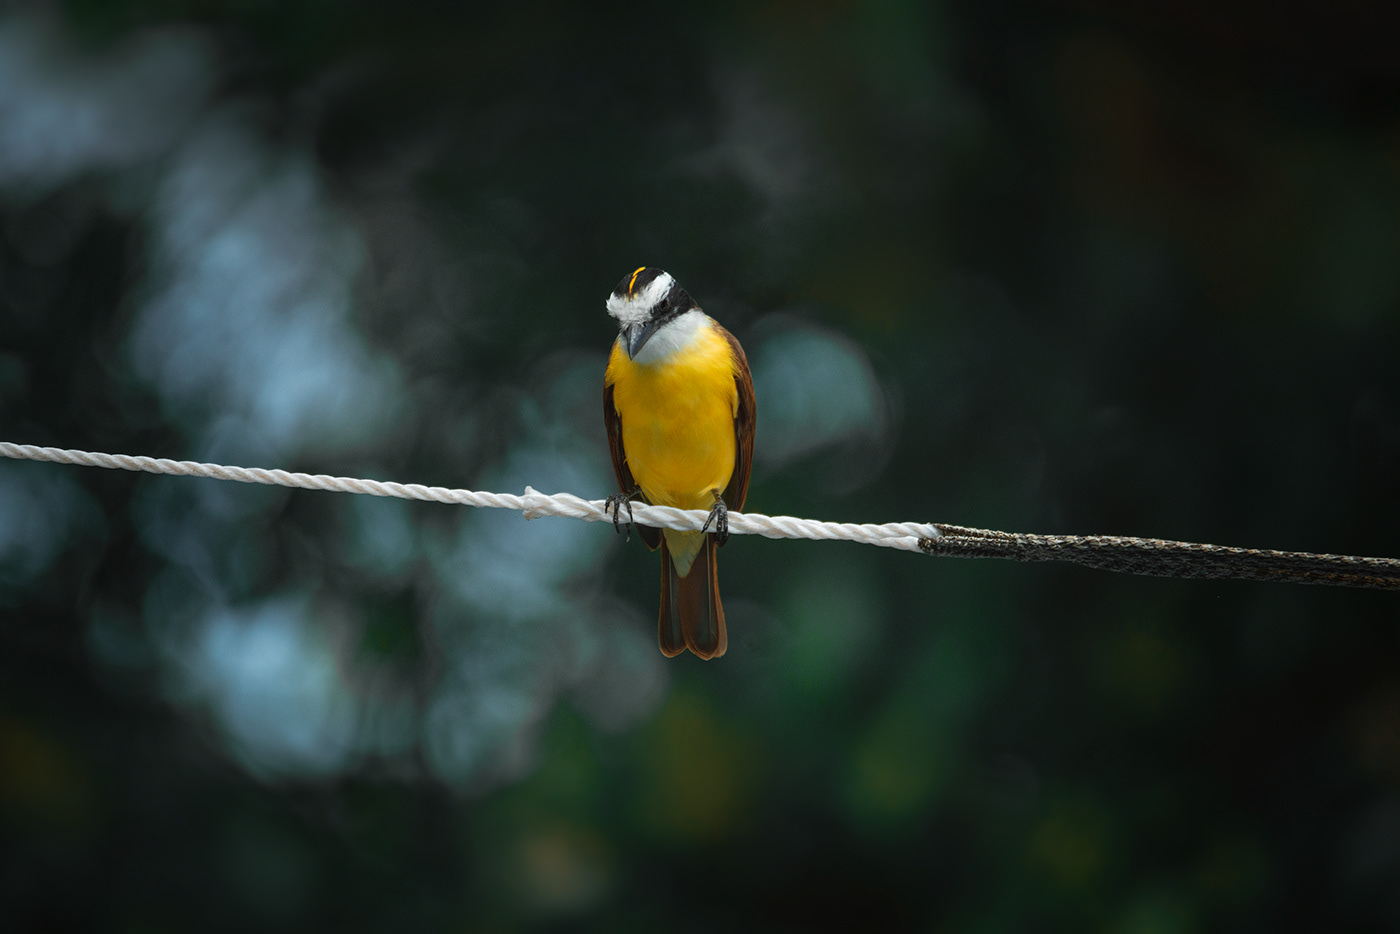 aves baja california sur birds birds photography mexico Nature Travel